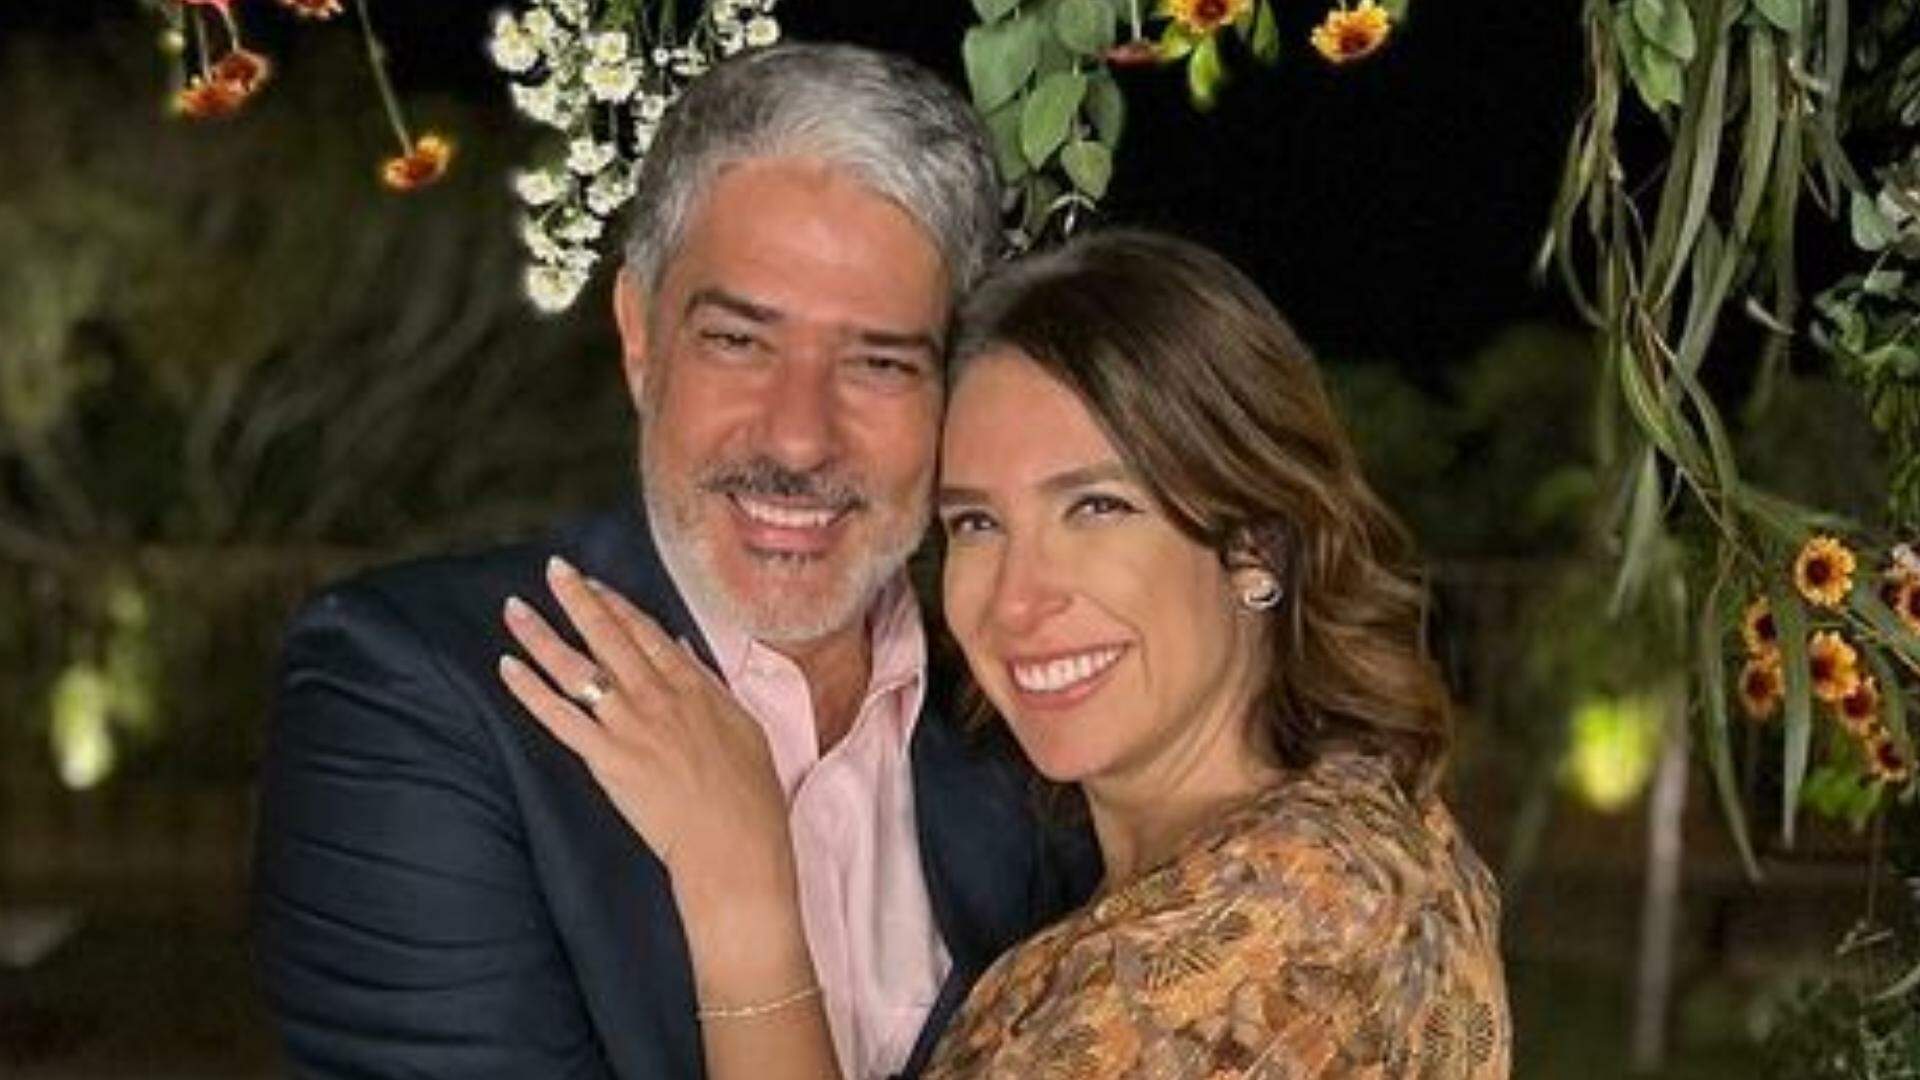 William Bonner e Natasha Dantas celebram 4 anos de casados: “Eu amo” - Metropolitana FM